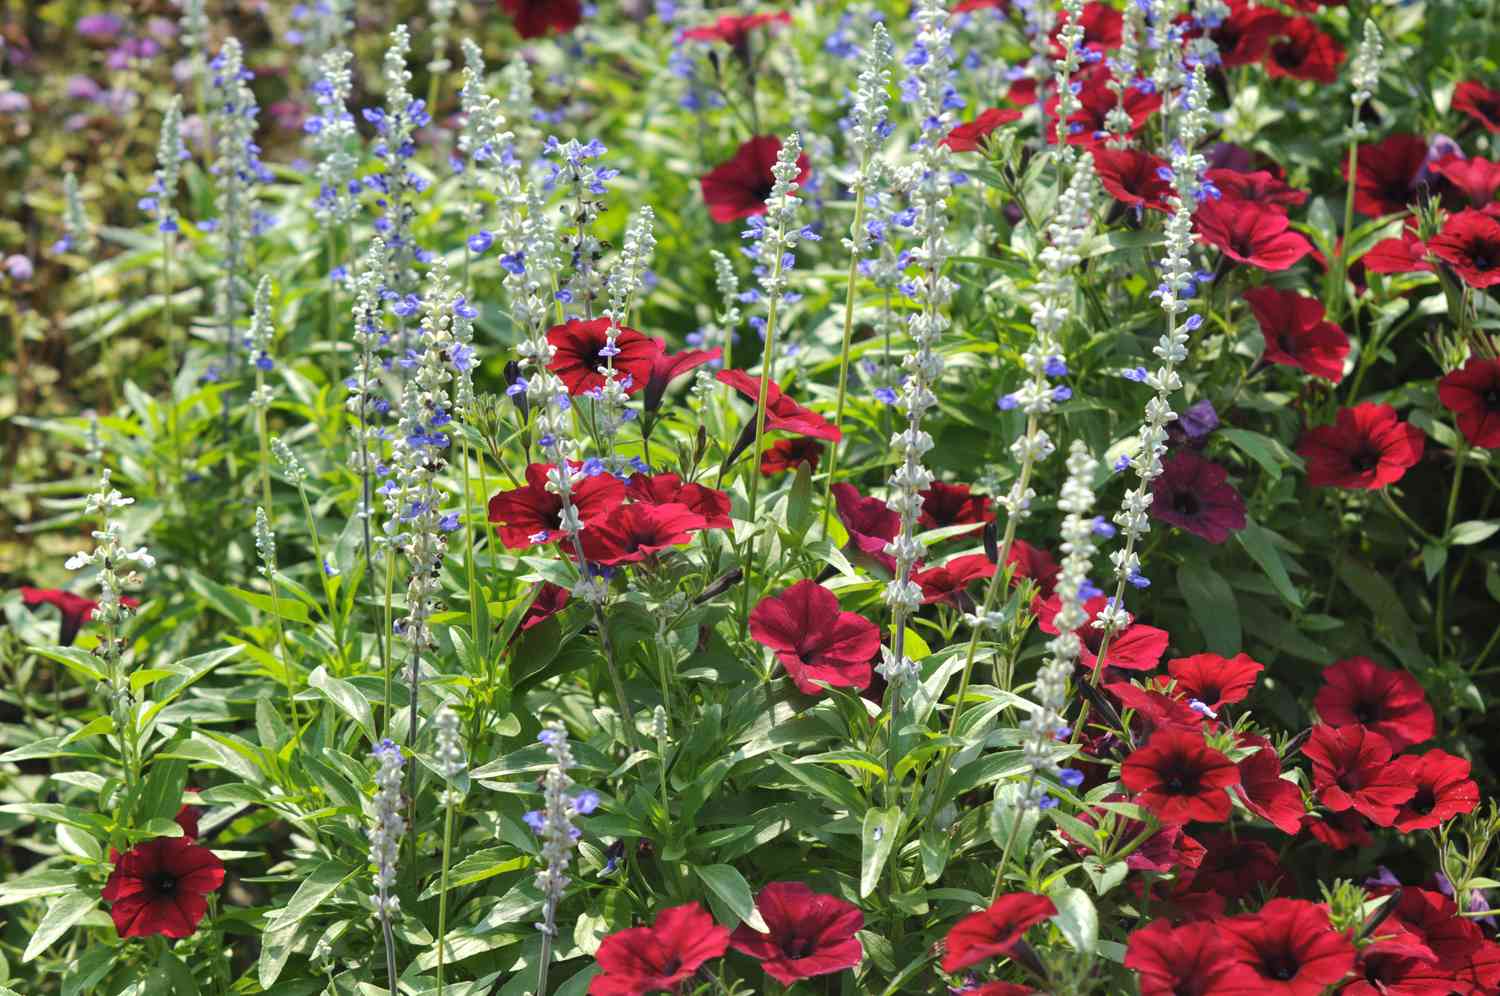 Mealy cup sage com flores azuis claras nas folhas e outras flores vermelhas